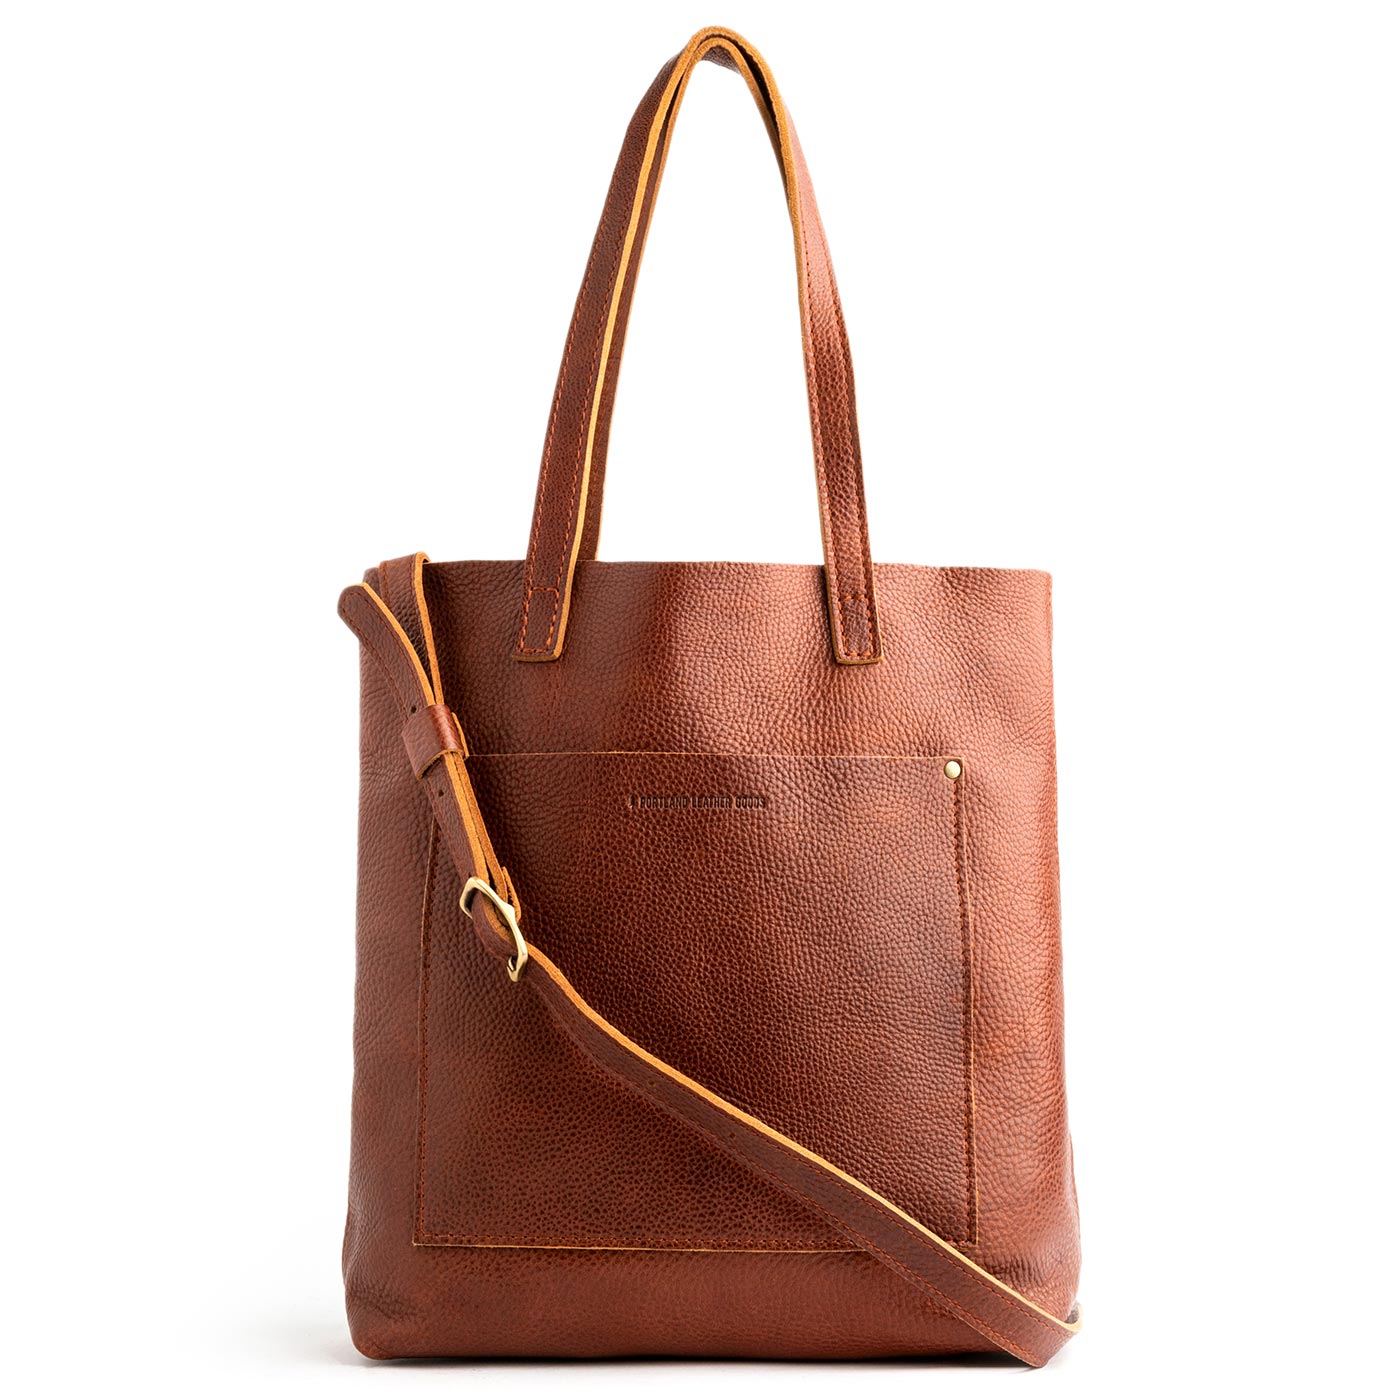 HYPE Black Leather Large Shoulder Bag Purse Handbag-GORGEOUS! | eBay